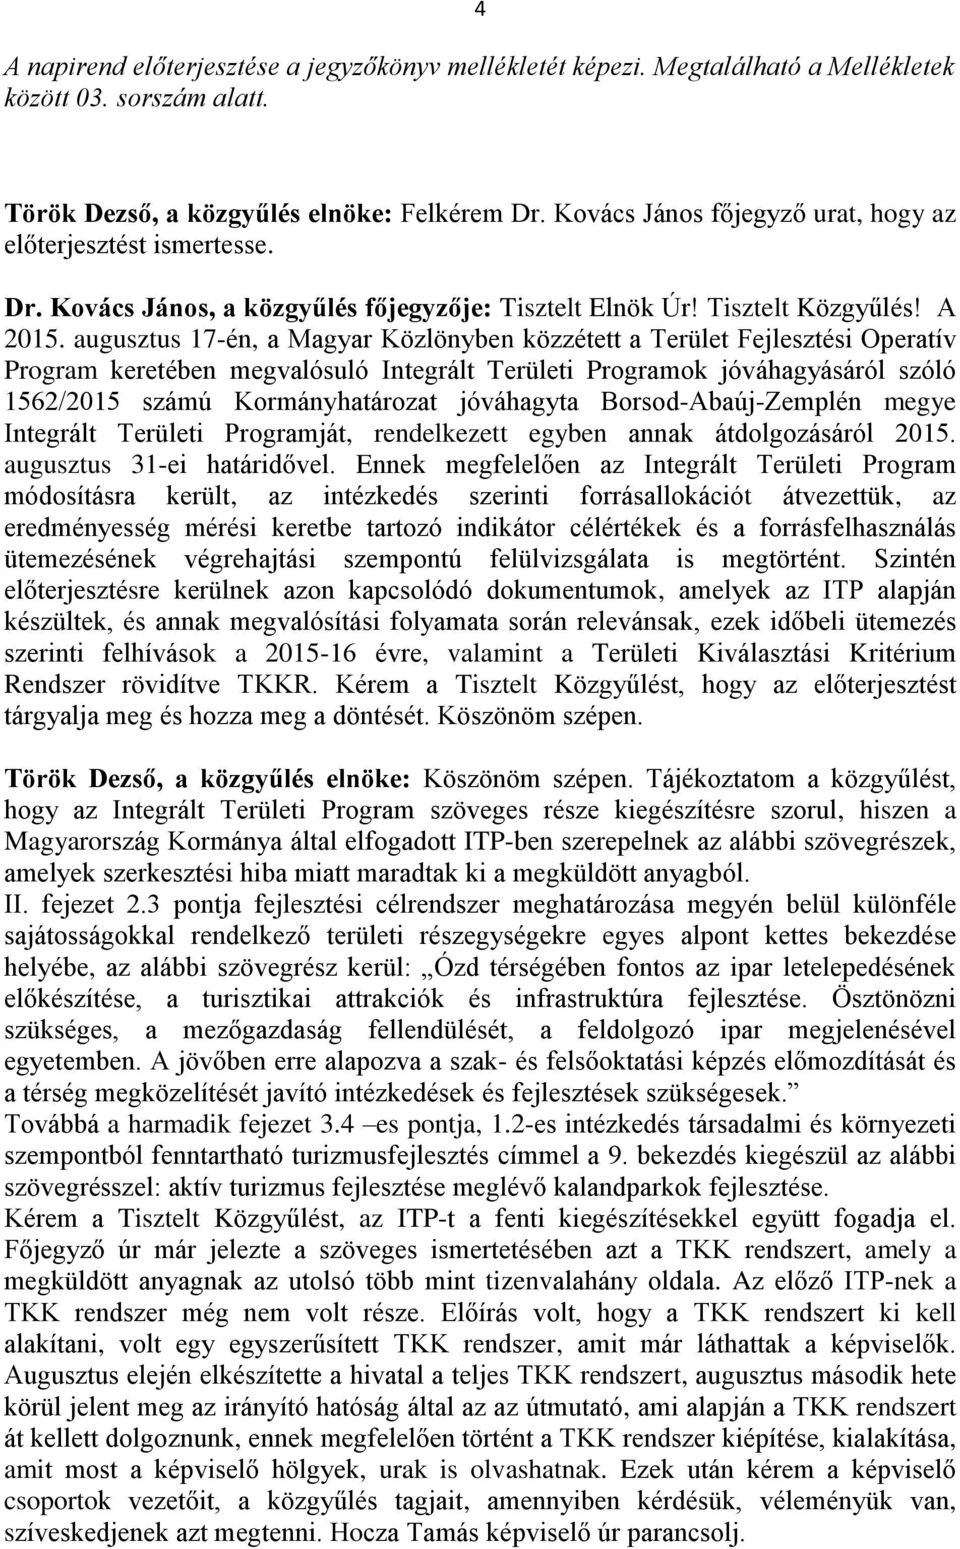 augusztus 17-én, a Magyar Közlönyben közzétett a Terület Fejlesztési Operatív Program keretében megvalósuló Integrált Területi Programok jóváhagyásáról szóló 1562/2015 számú Kormányhatározat